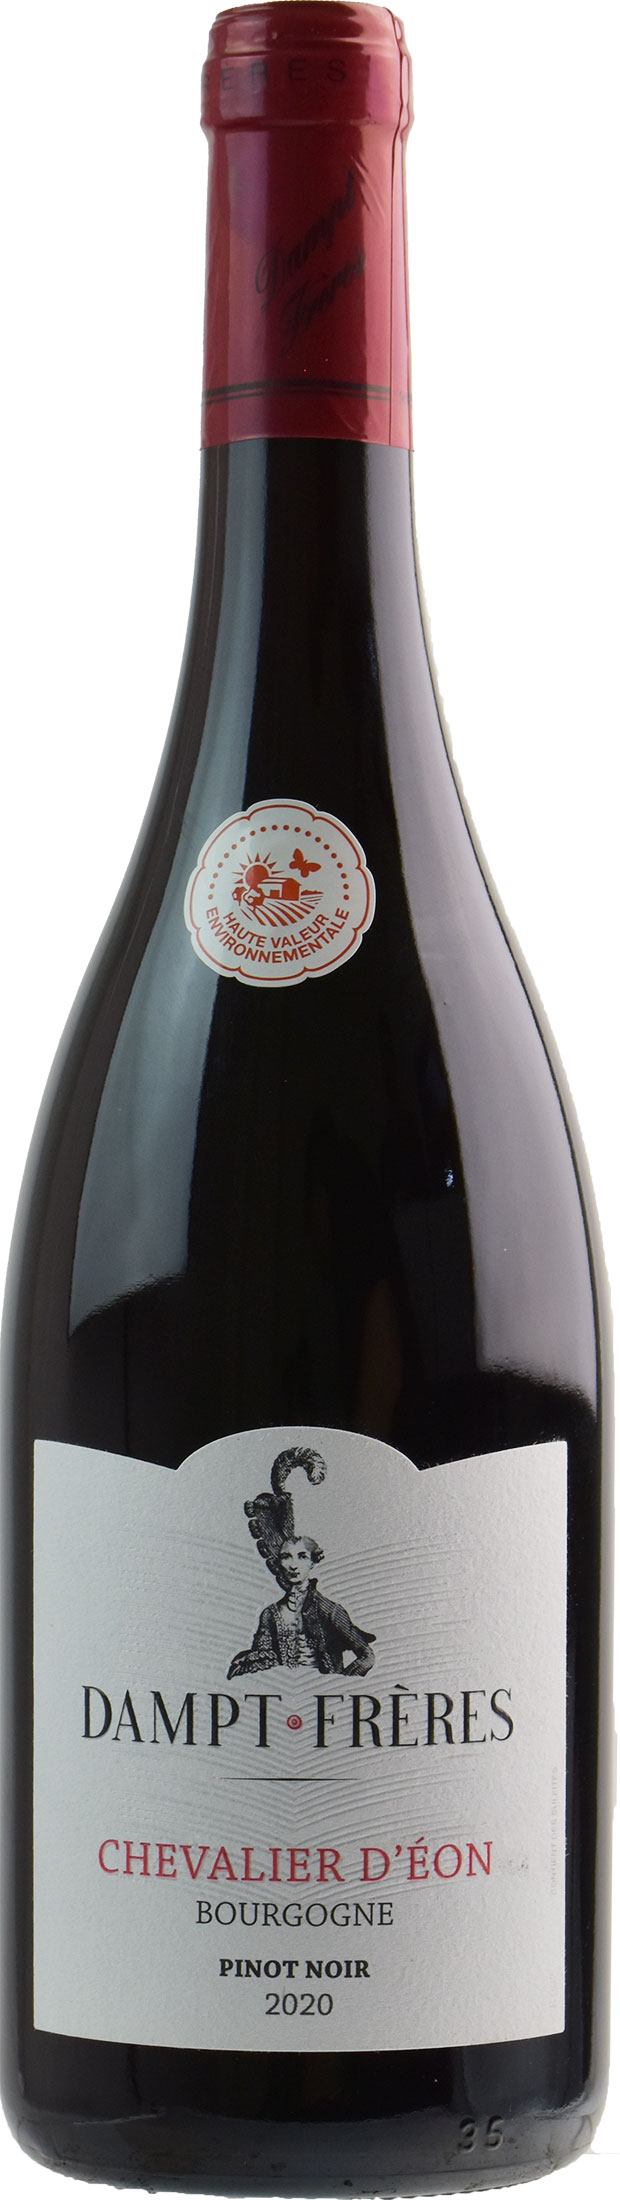 Vignoble Dampt Bourgogne Chevalier d’Eon Pinot Noir 2020